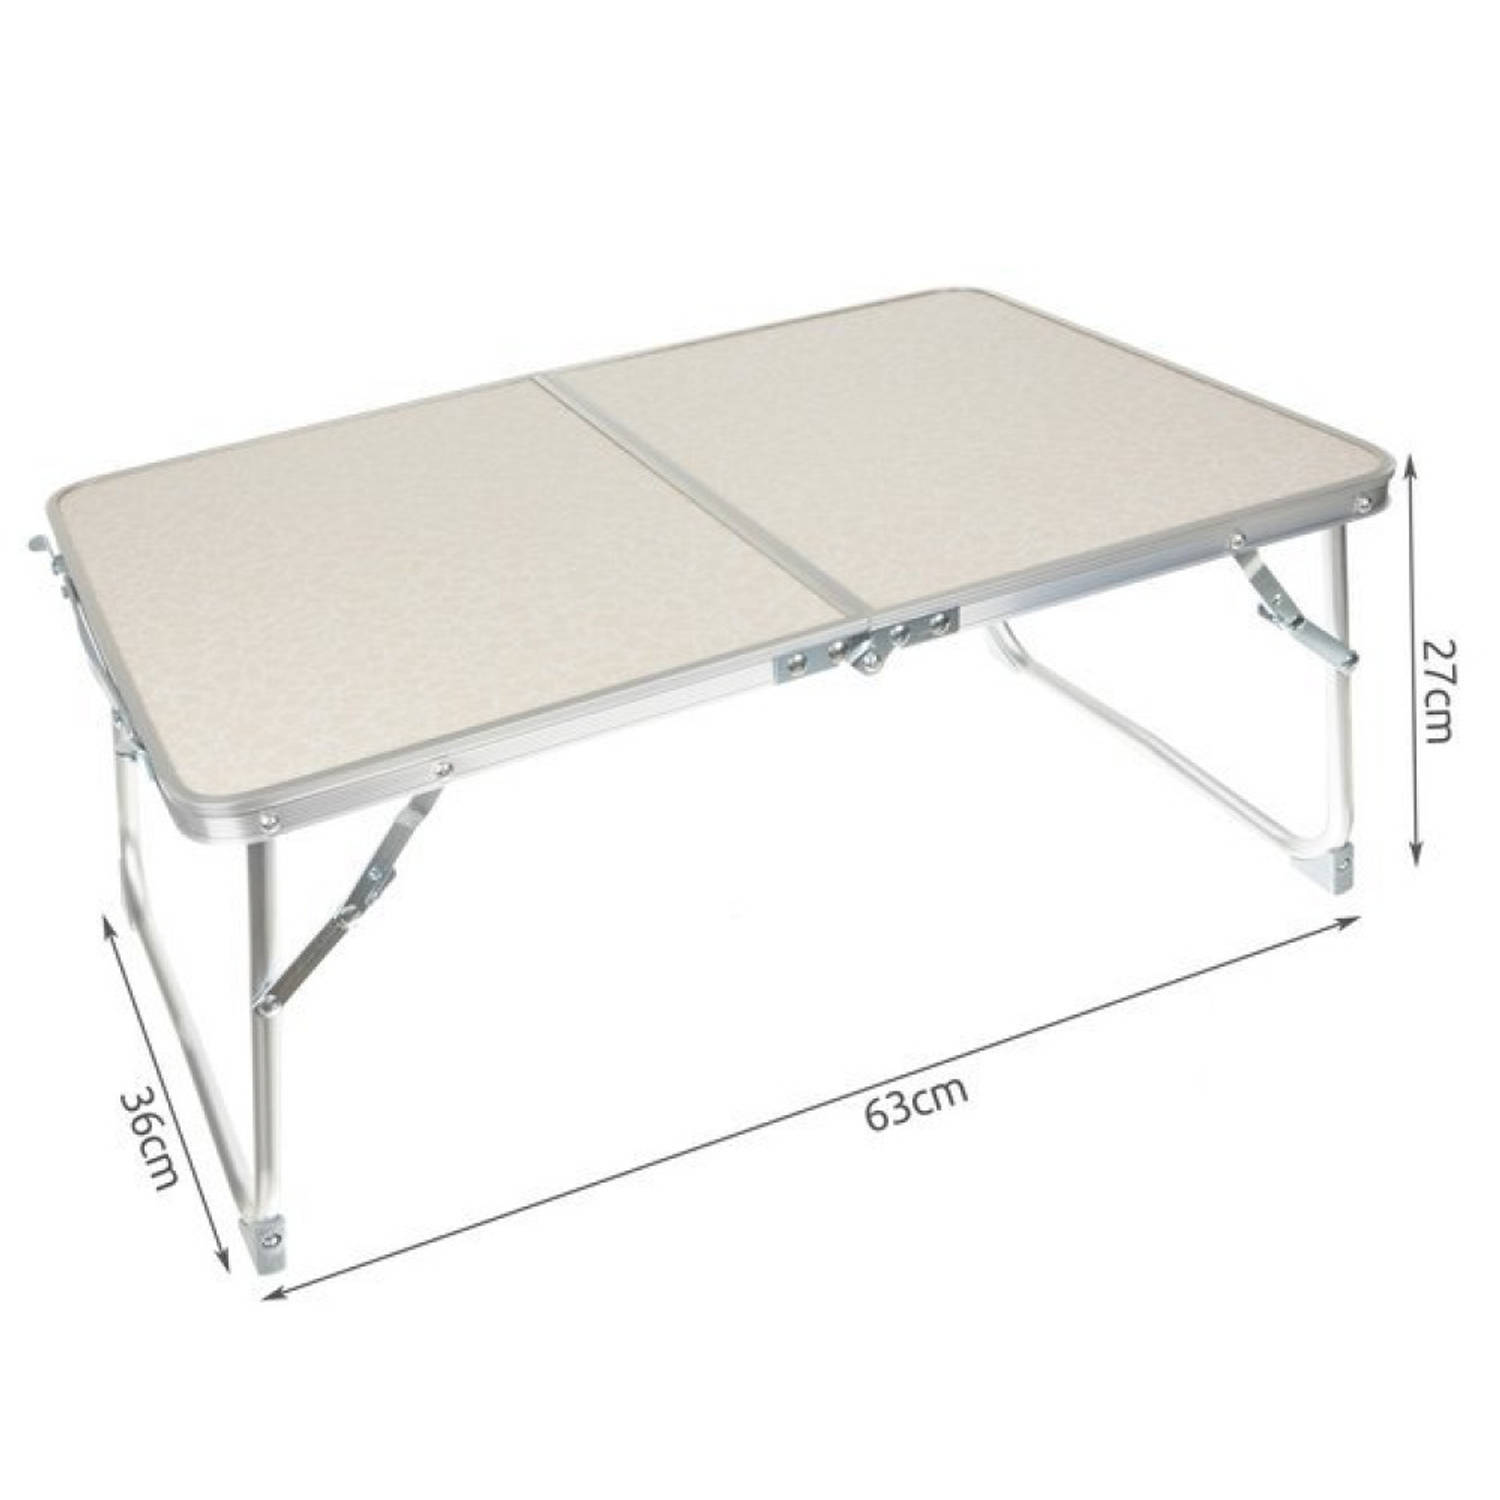 Afwijzen spiegel verdrievoudigen Iso trade Opvouwbare tafel 27cm hoog | Blokker